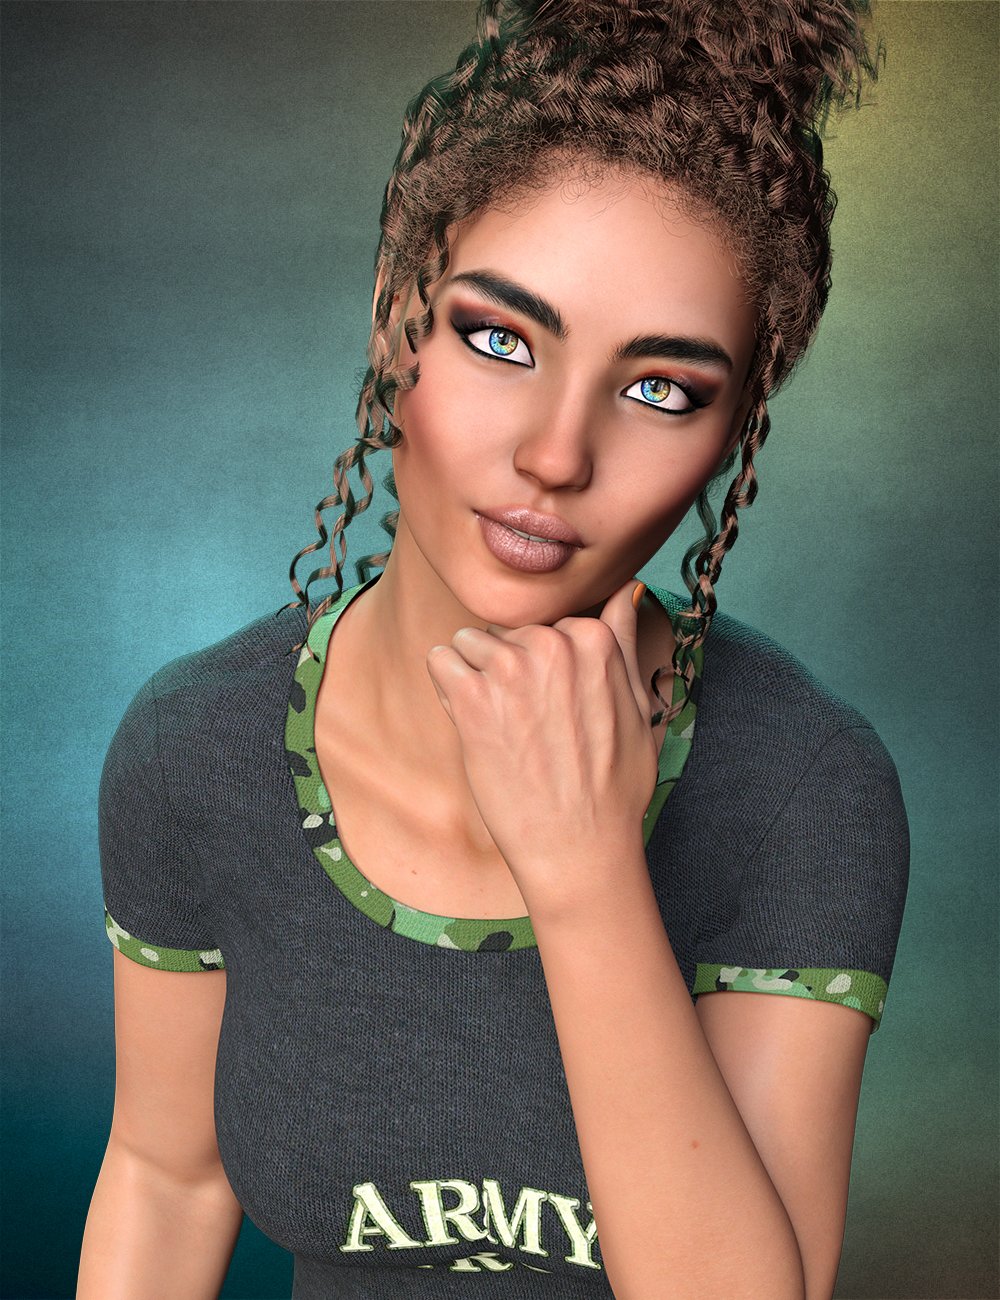 Landri for Genesis 8 Female by: hotlilme74, 3D Models by Daz 3D